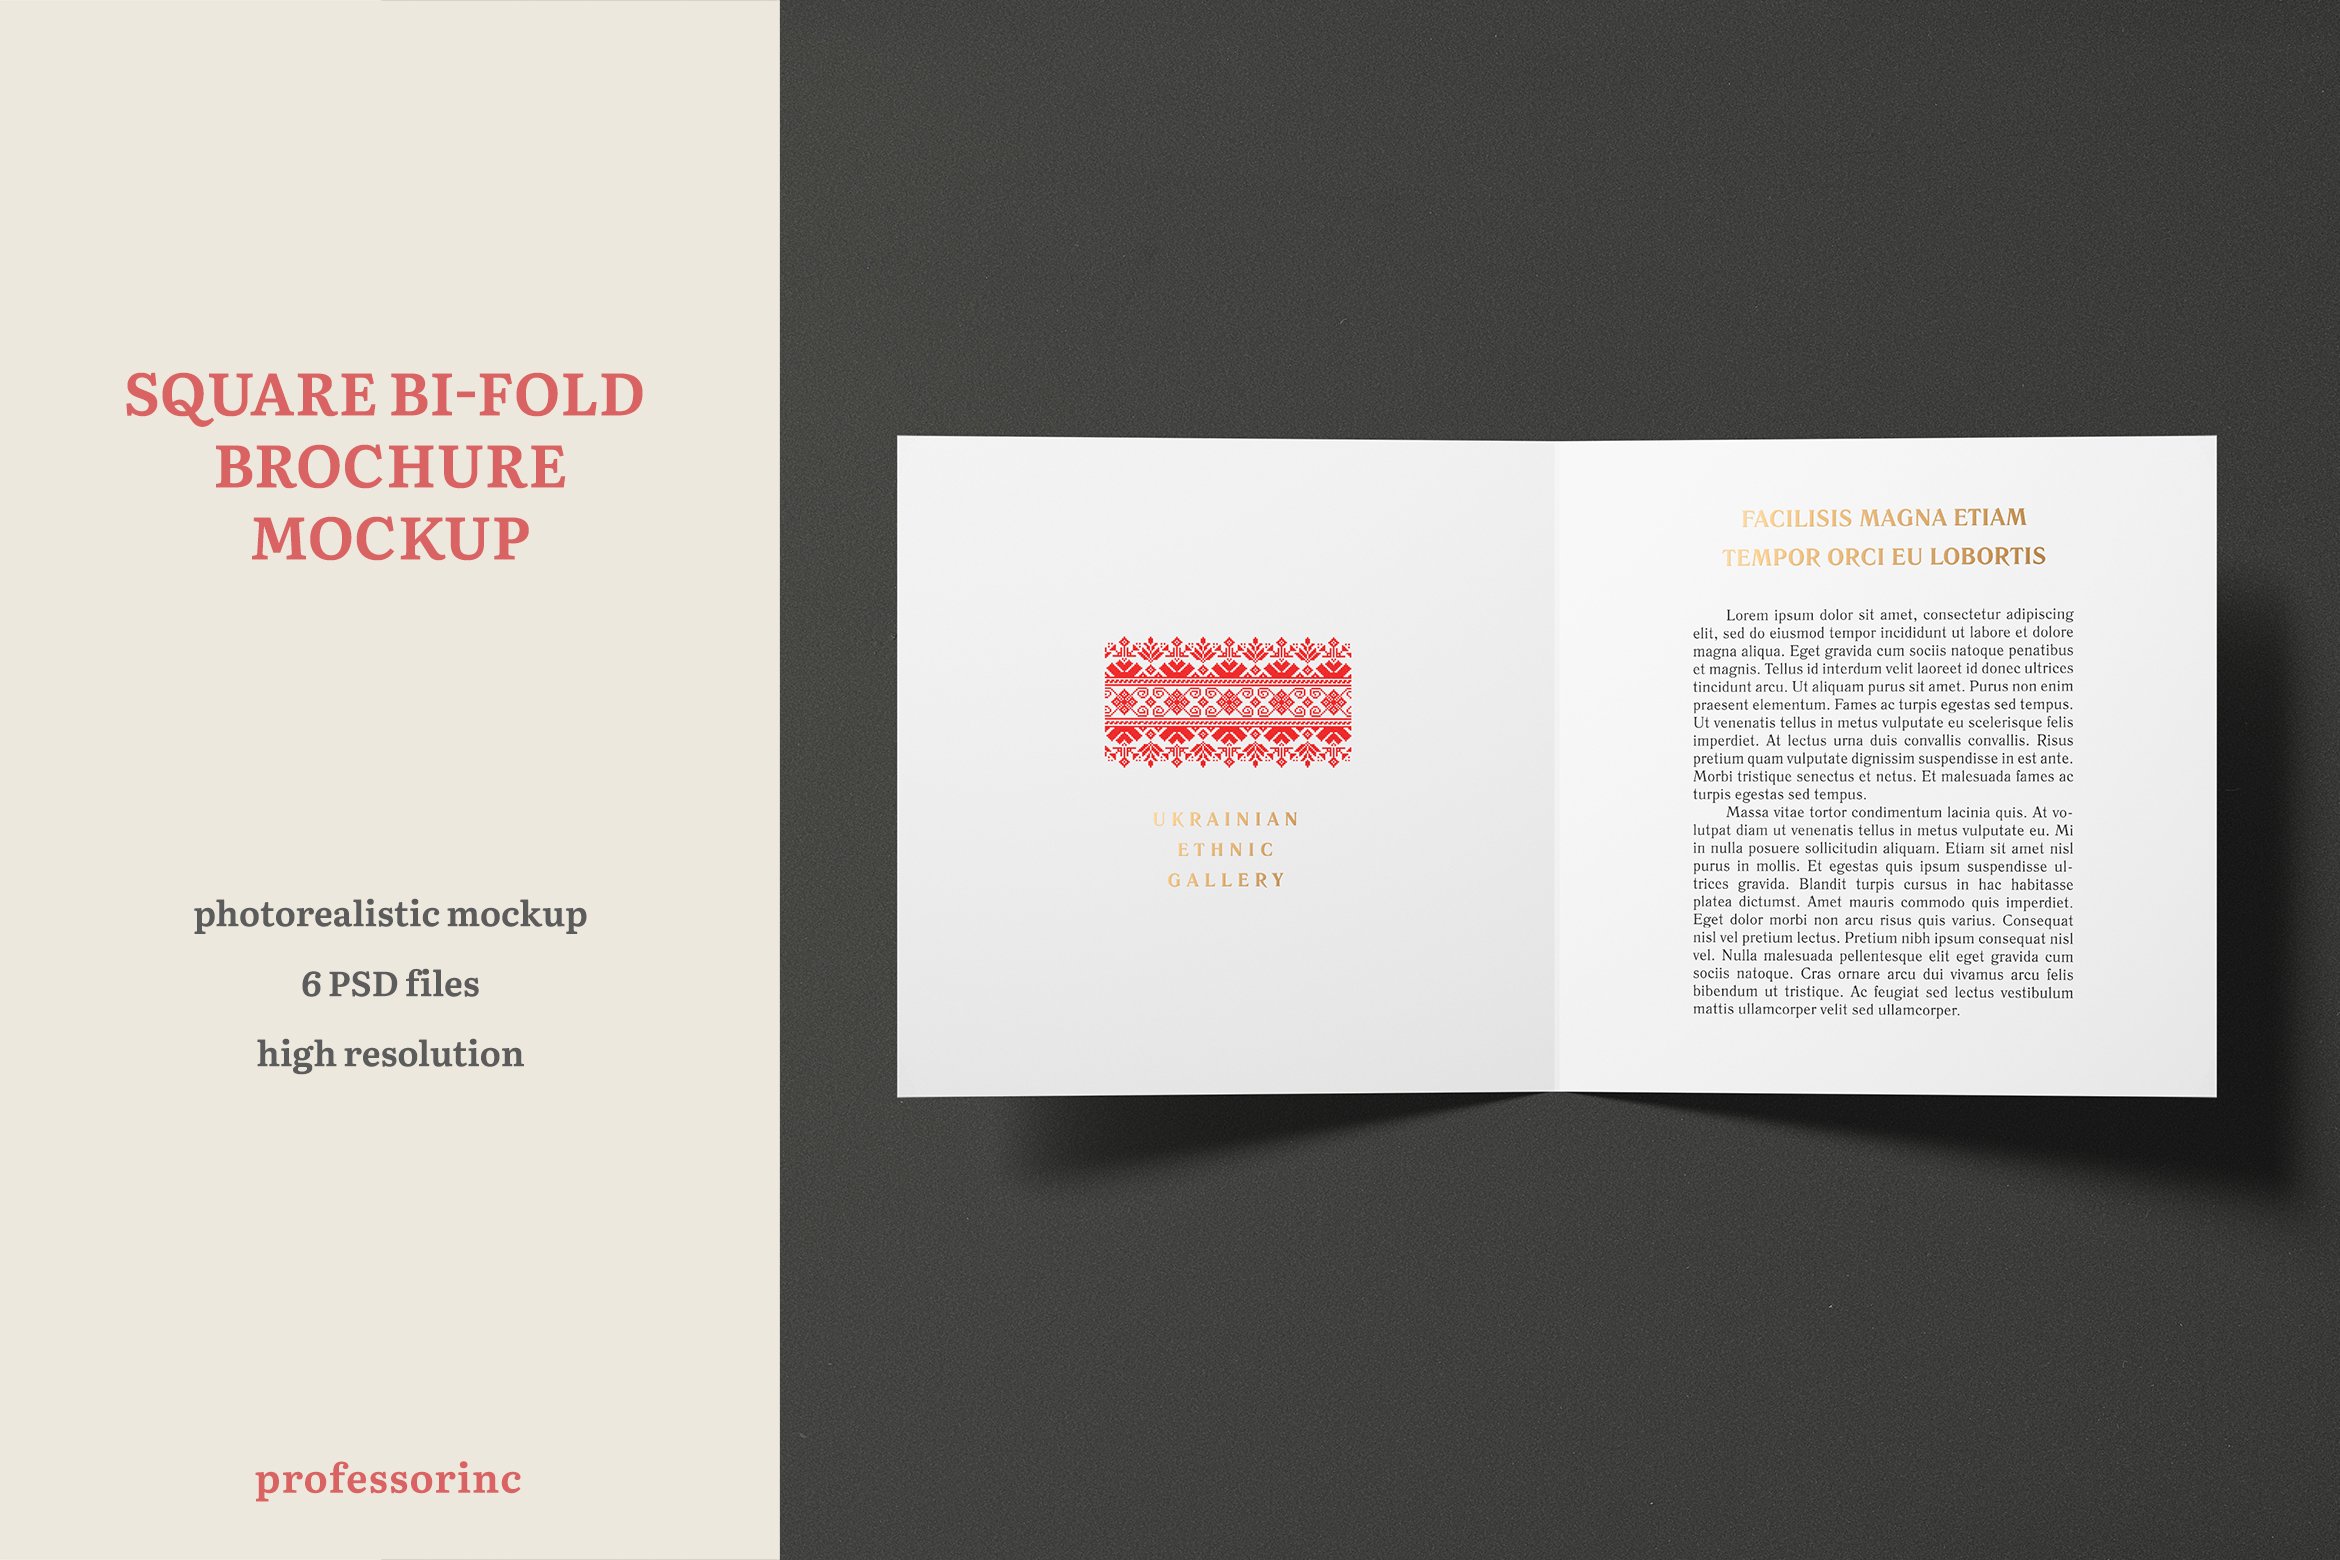 Square Bi-Fold Brochure Mockup cover image.